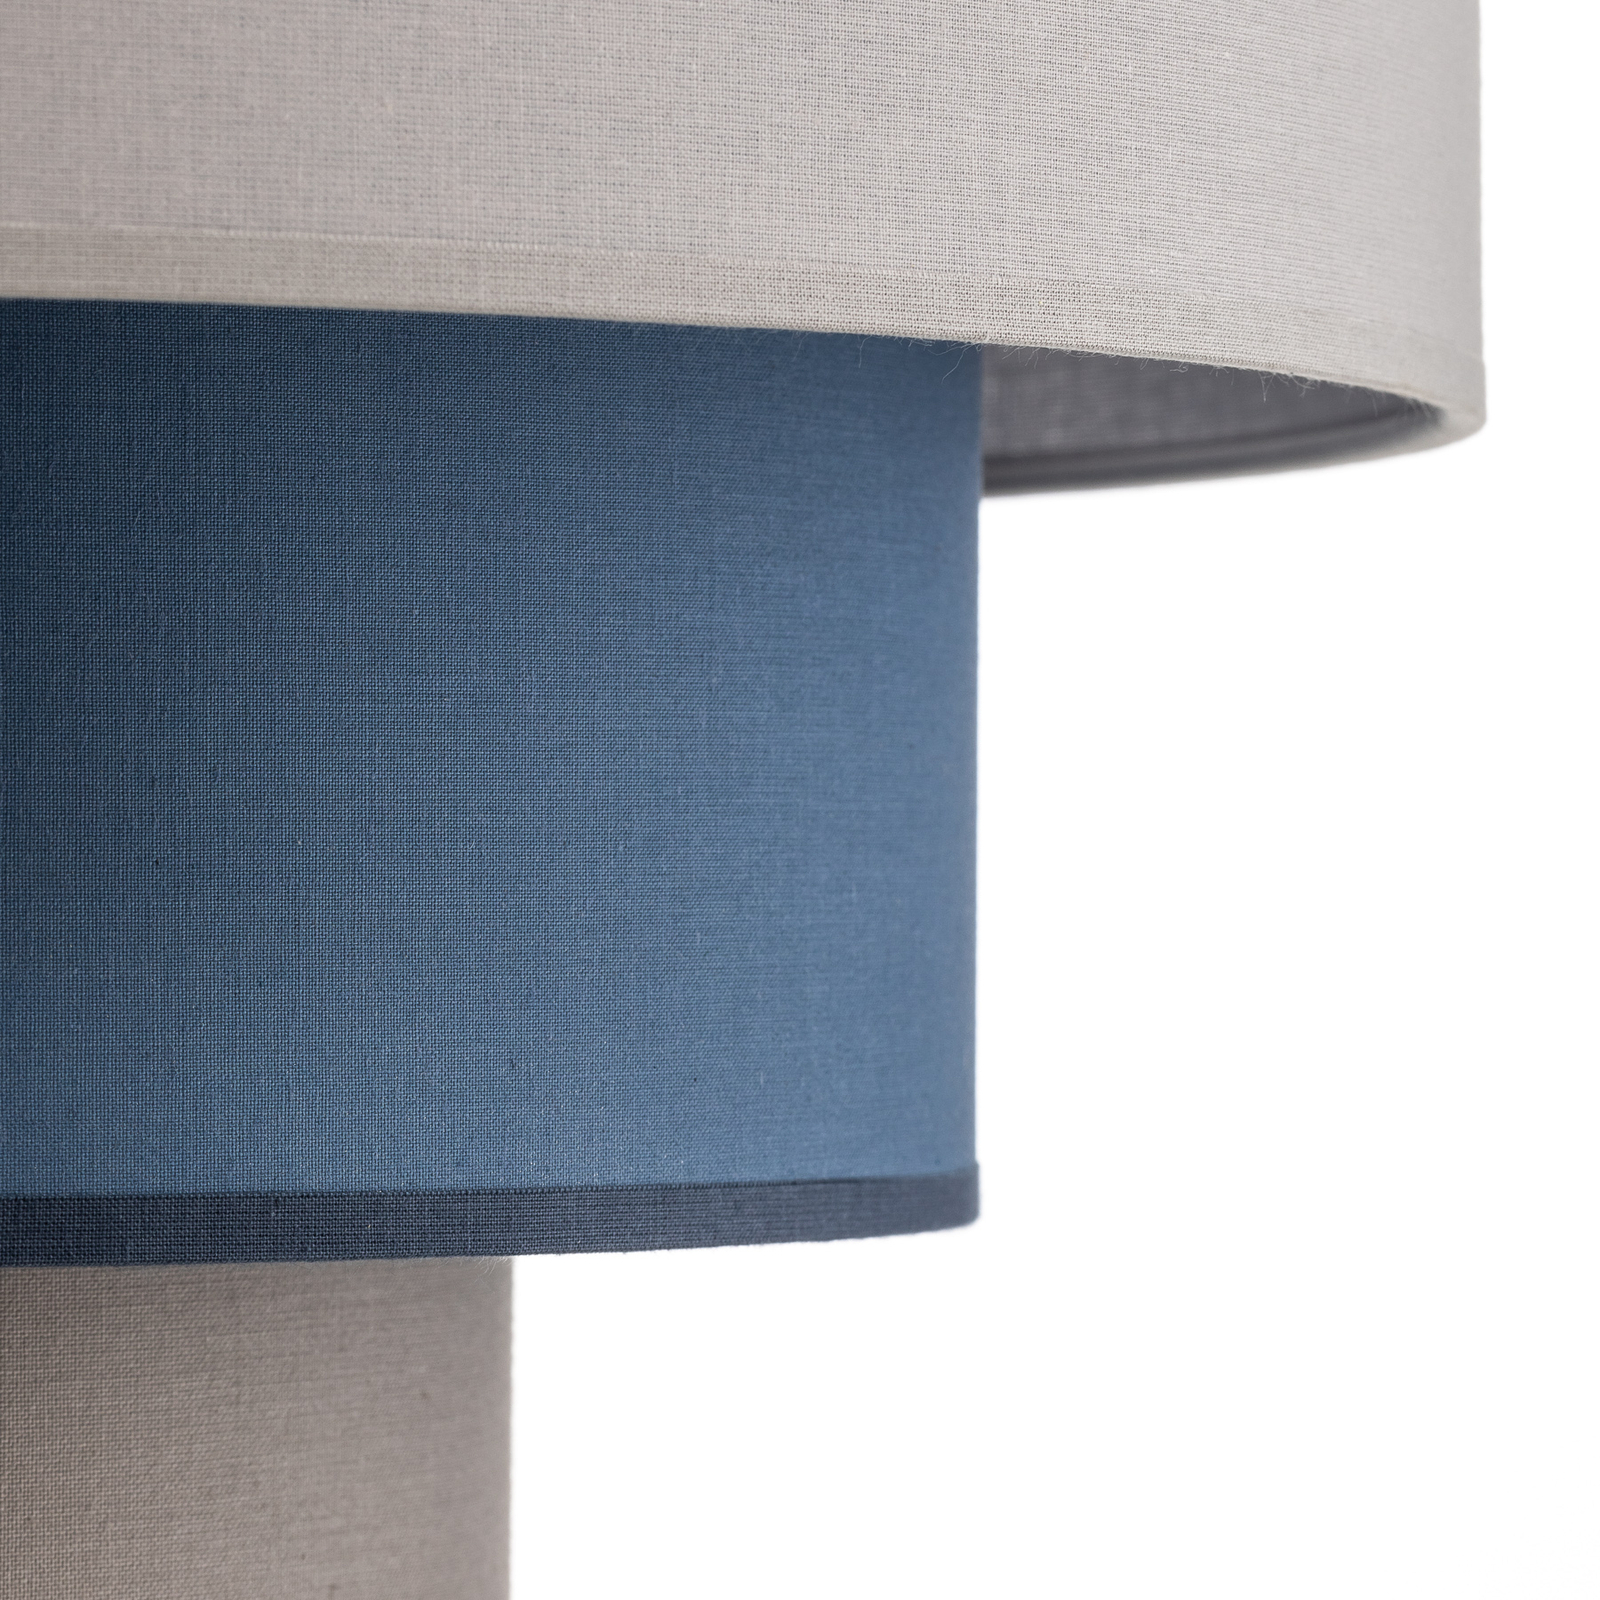 Luneta lámpara colgante textil, gris/azul marino, Ø45cm